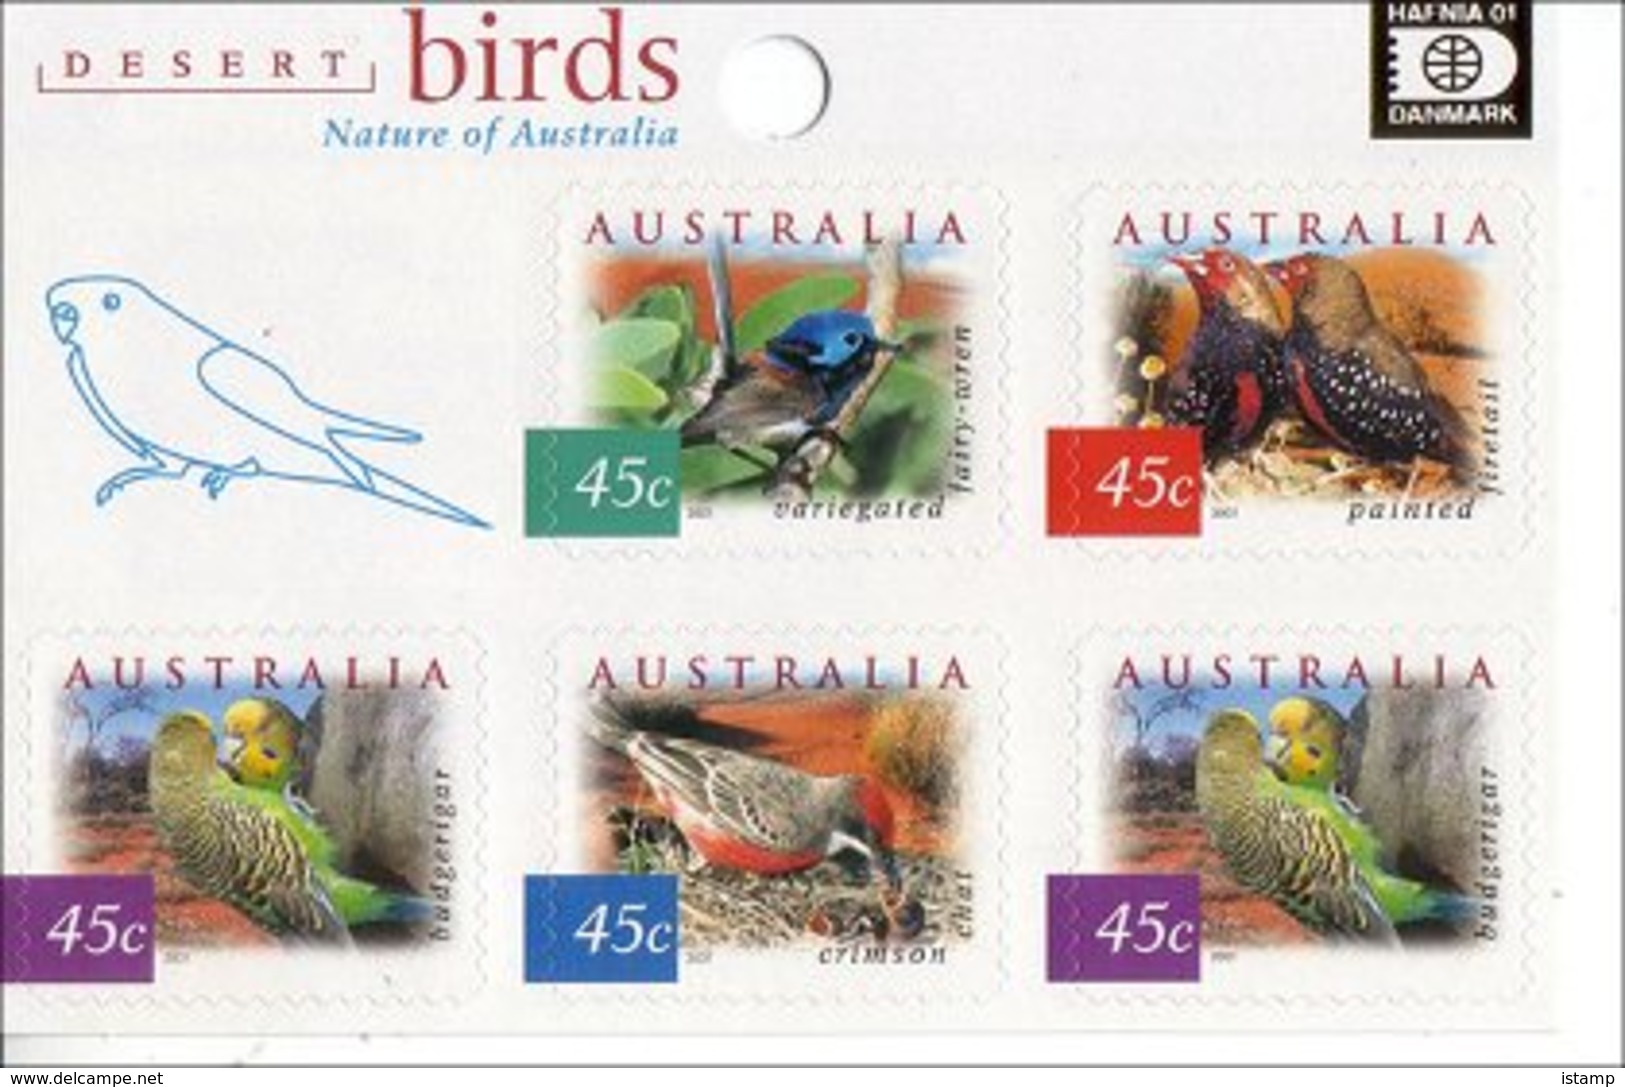 ⭕2001 - Australia Desert BIRDS 'overprint HAFNIA' - Souvenir Sheet Stamps MNH⭕ - Blocks & Sheetlets